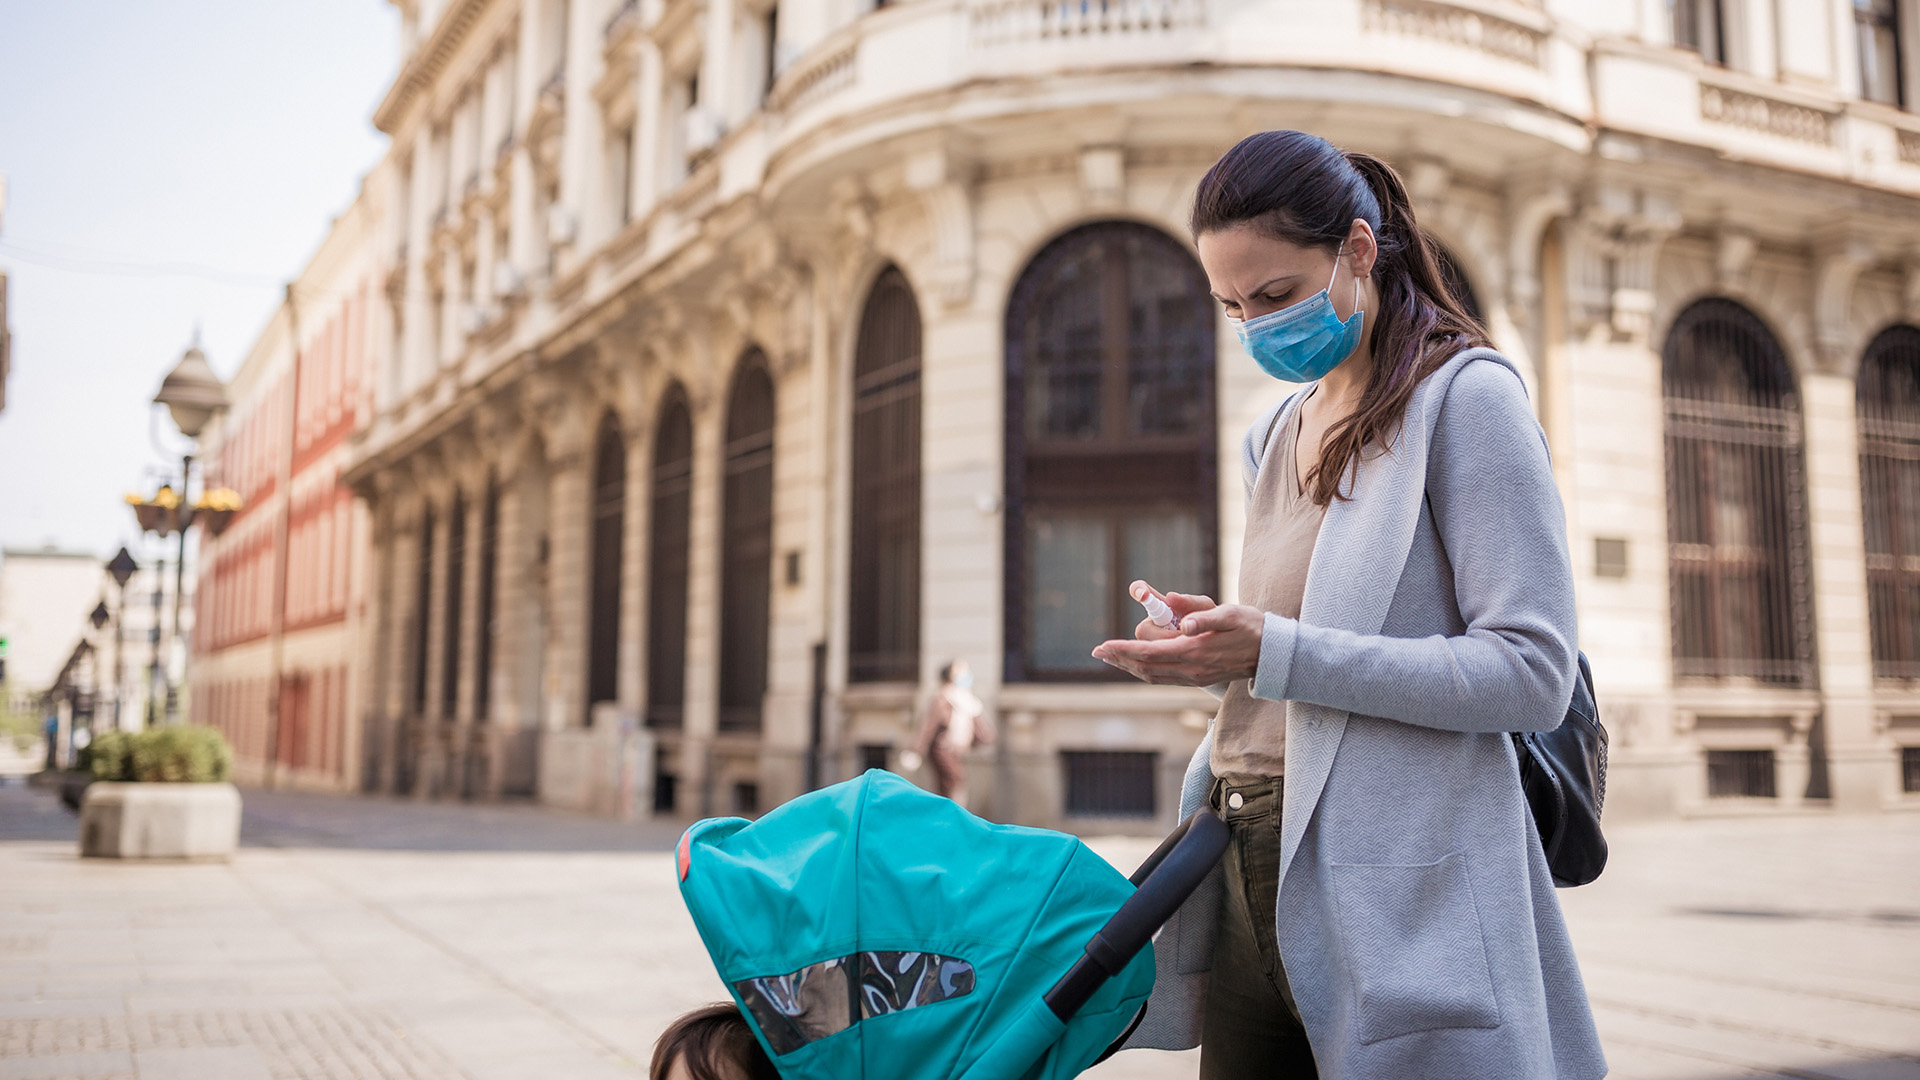 La exposición al aire contaminado se asocia con un mayor riesgo de enfermarse de COVID-19 en pacientes infectados, según un estudio